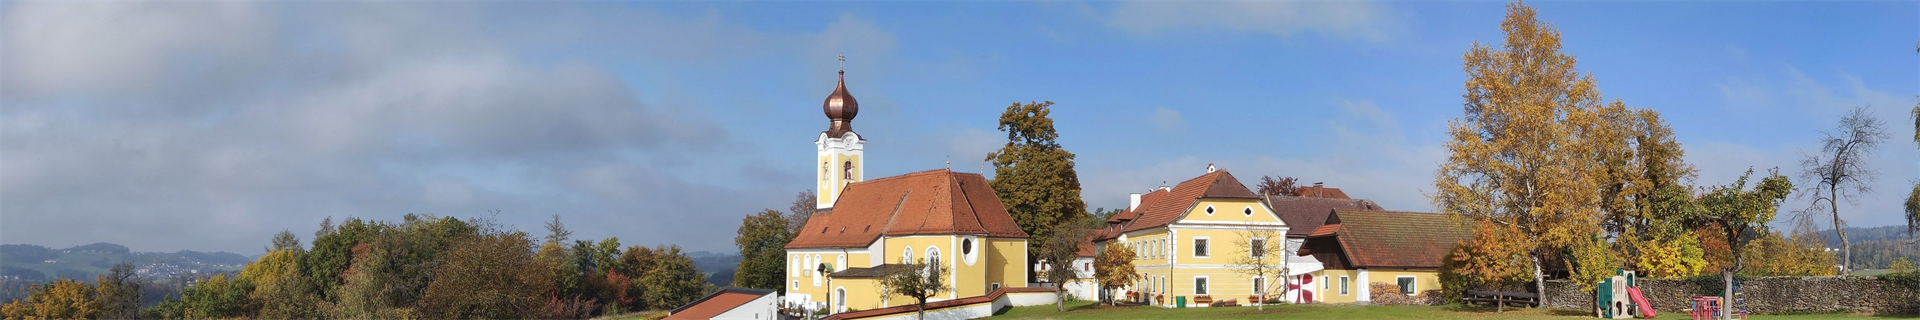 Kirche St. Gotthard